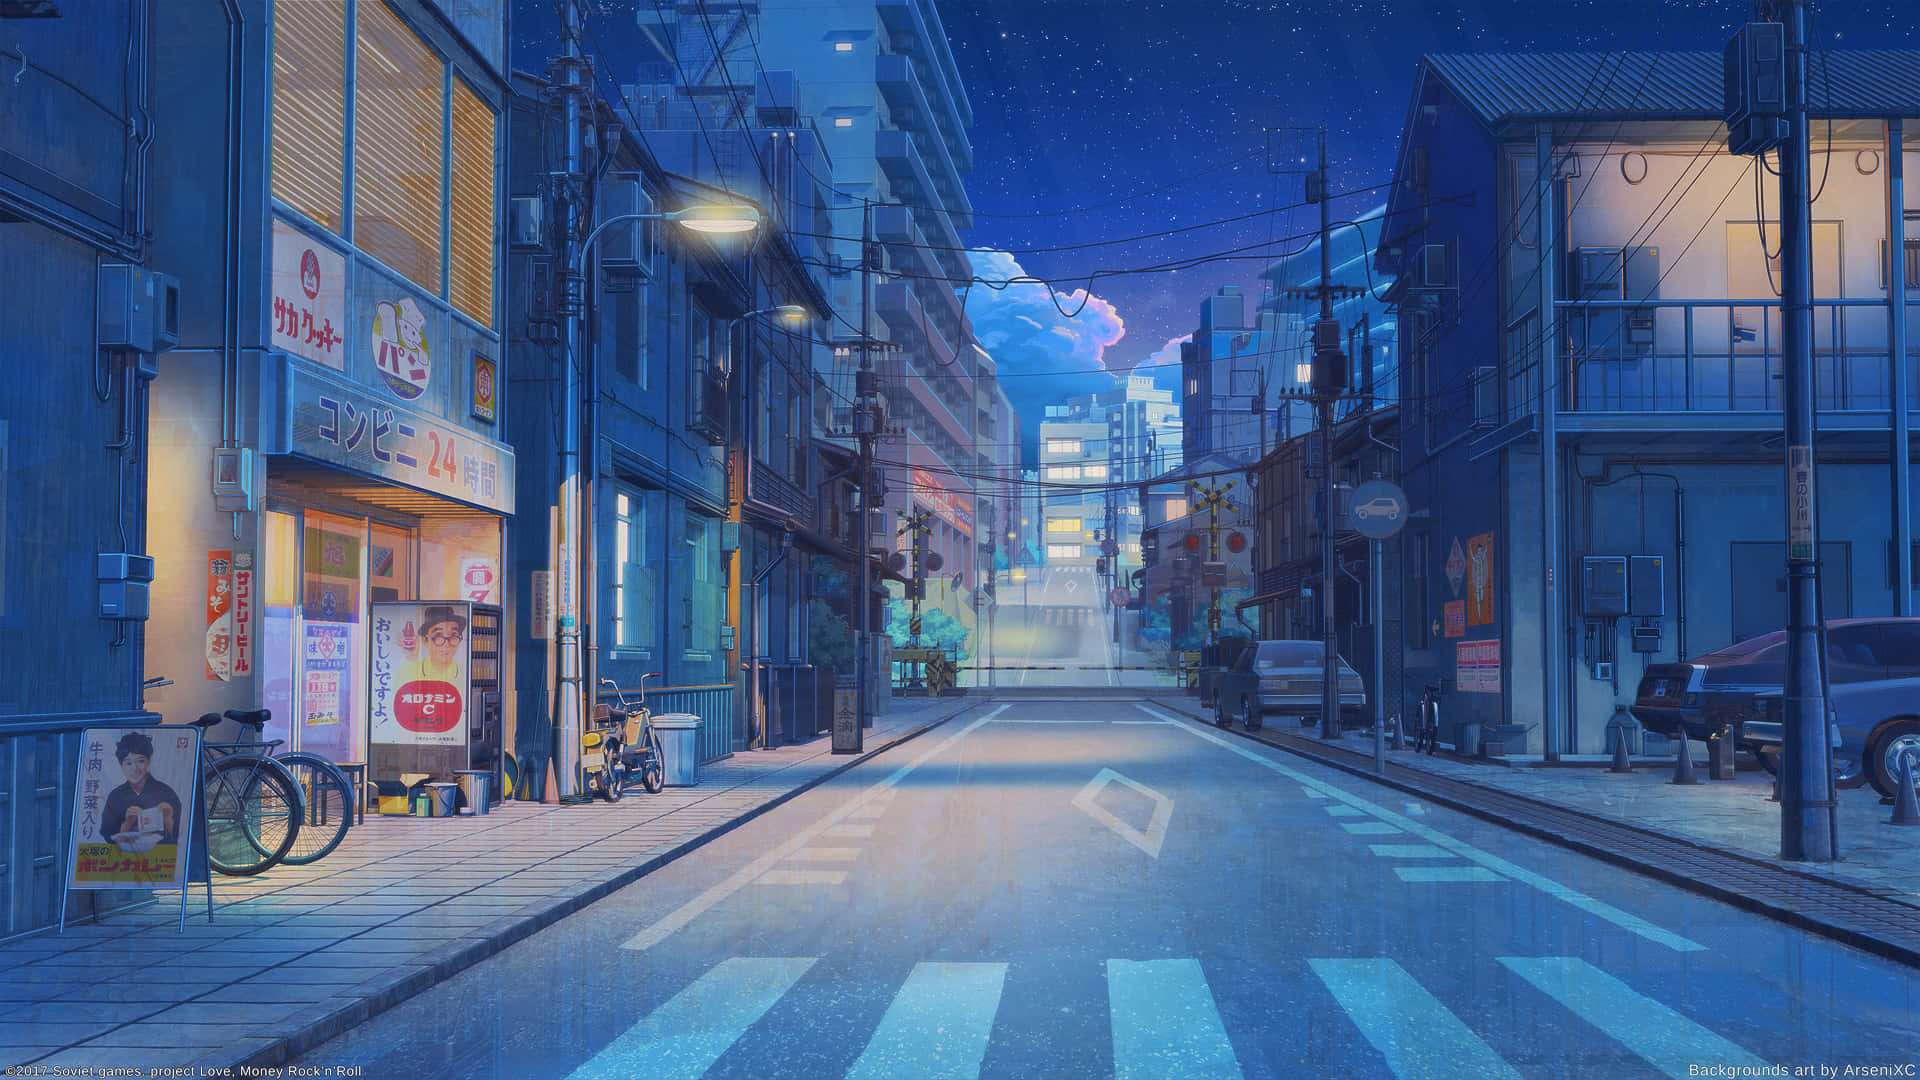 Fondode Pantalla De Tokio Dibujo De Anime Calle Tranquila De Noche.